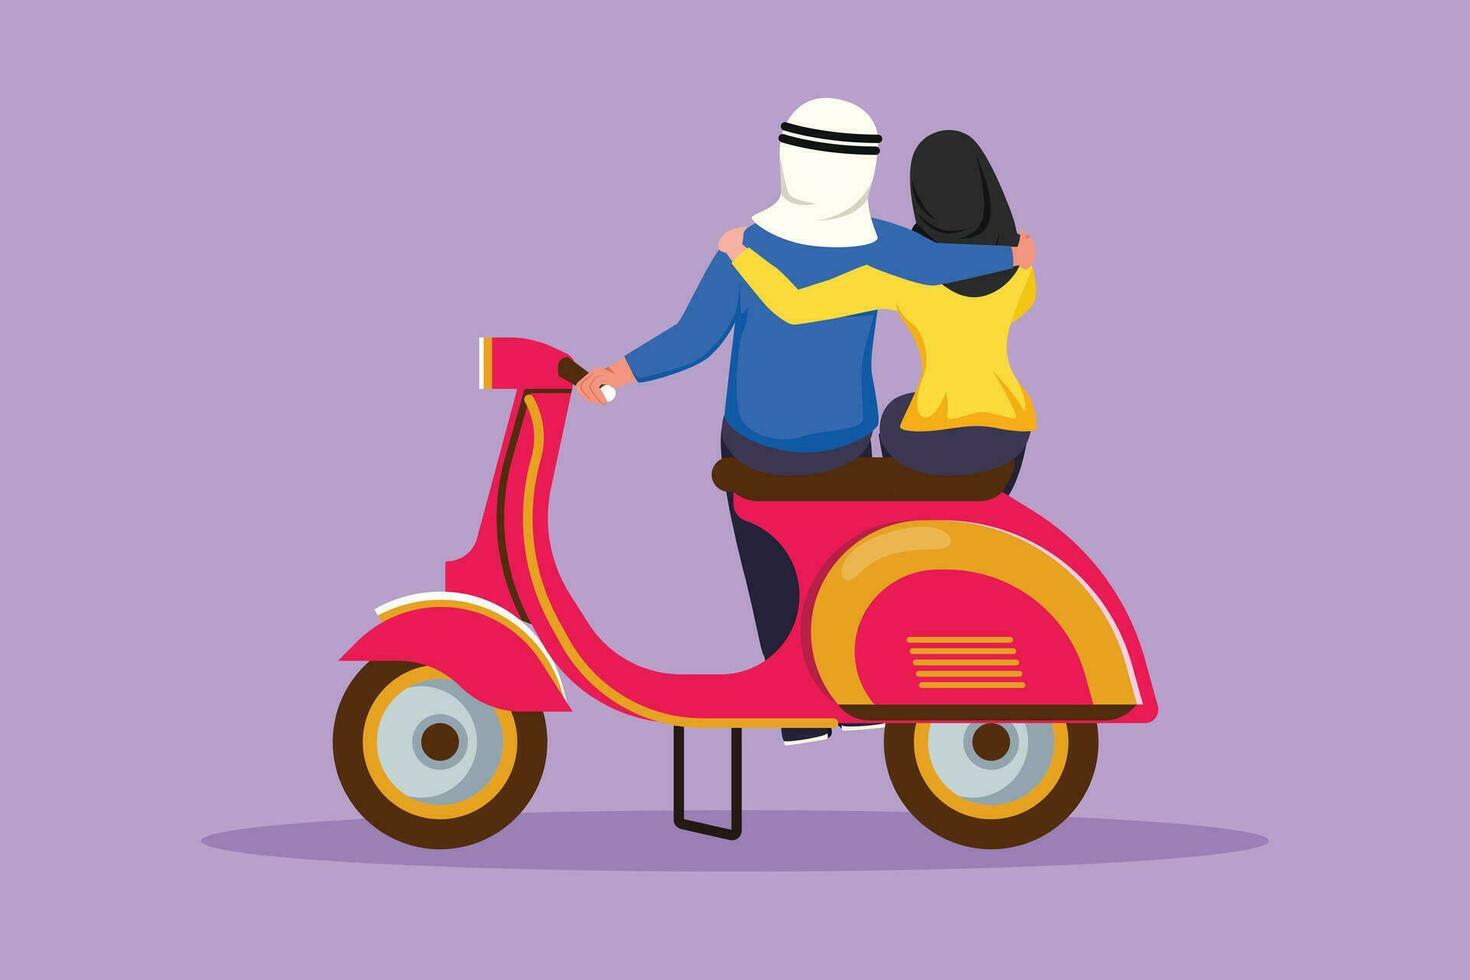 personaje plano dibujo espalda ver de jinetes Pareja viaje viaje relajarse. romántico árabe Pareja Luna de miel momentos con abrazando hombre con mujer montando scooter motocicleta. dibujos animados diseño vector ilustración